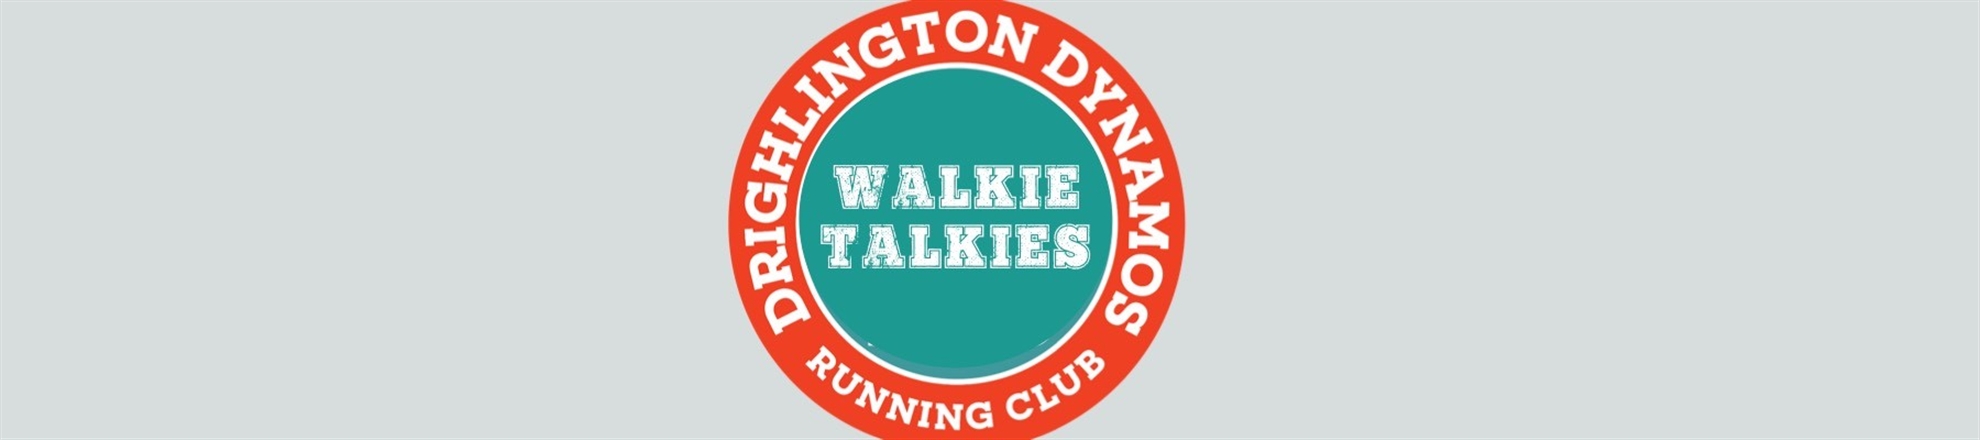 Drighlington Community Sports Club - Walkie Talkies 5-6 km Walk